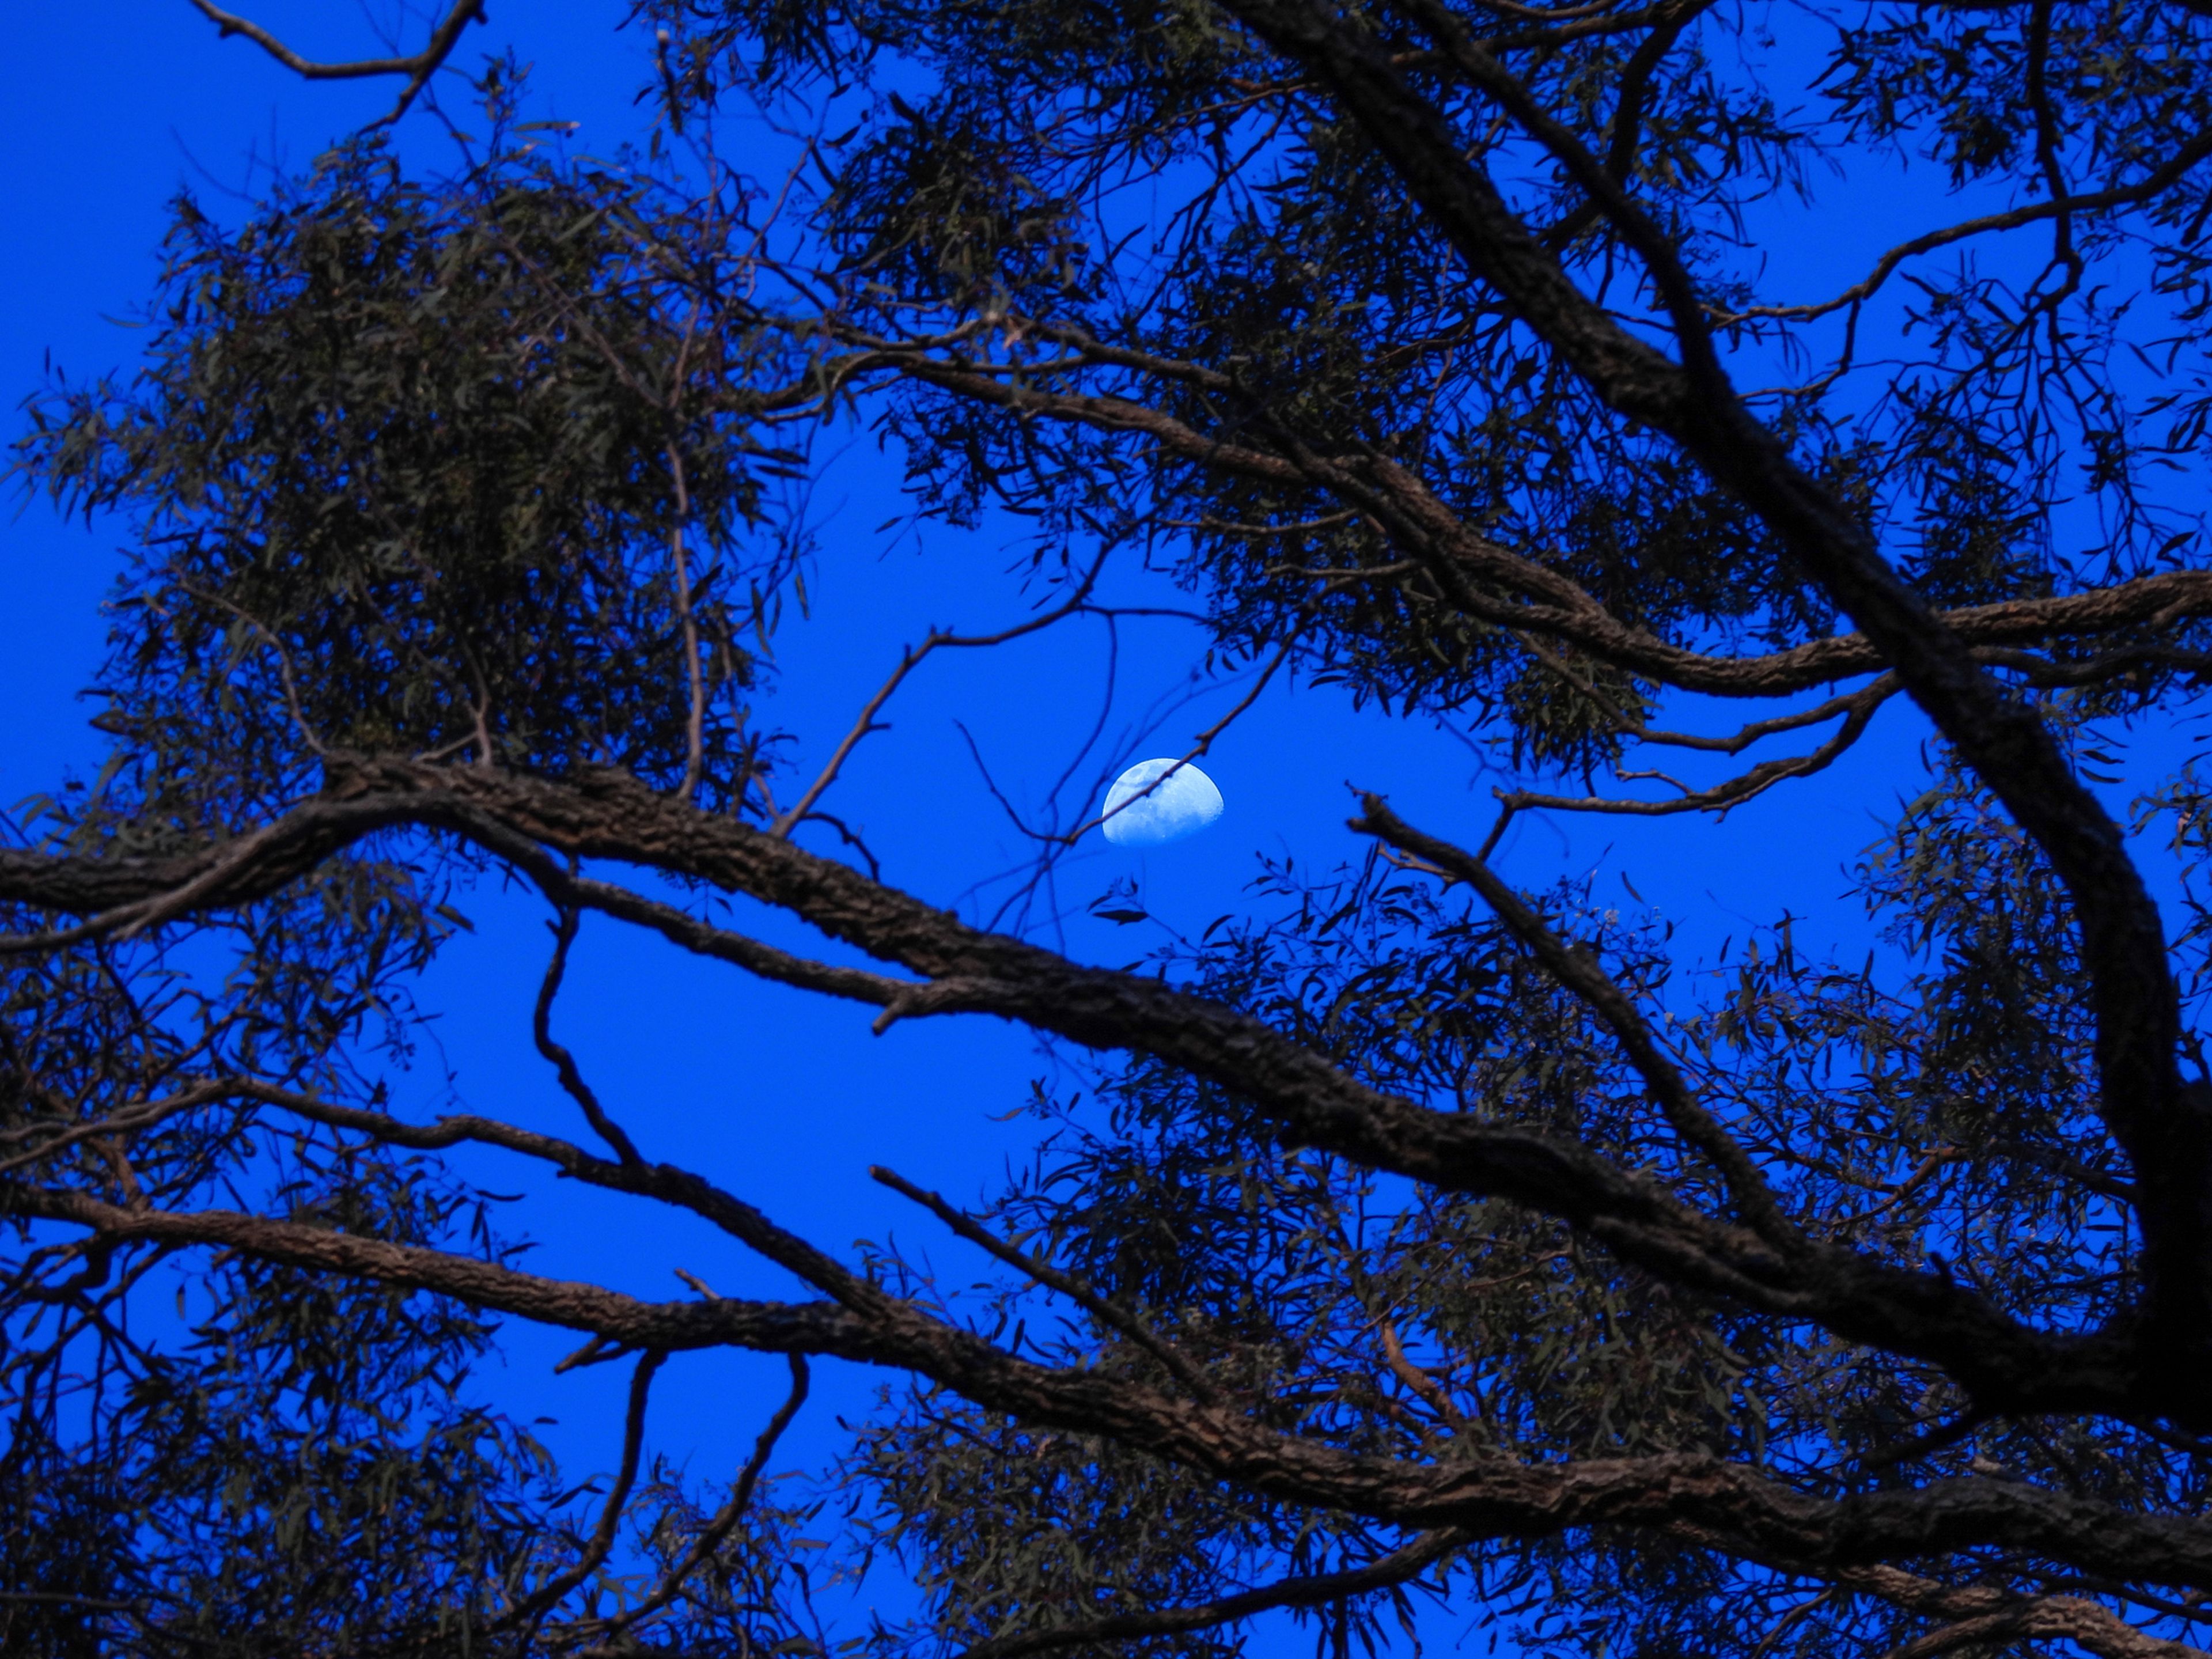 Luna escondida entre los árboles